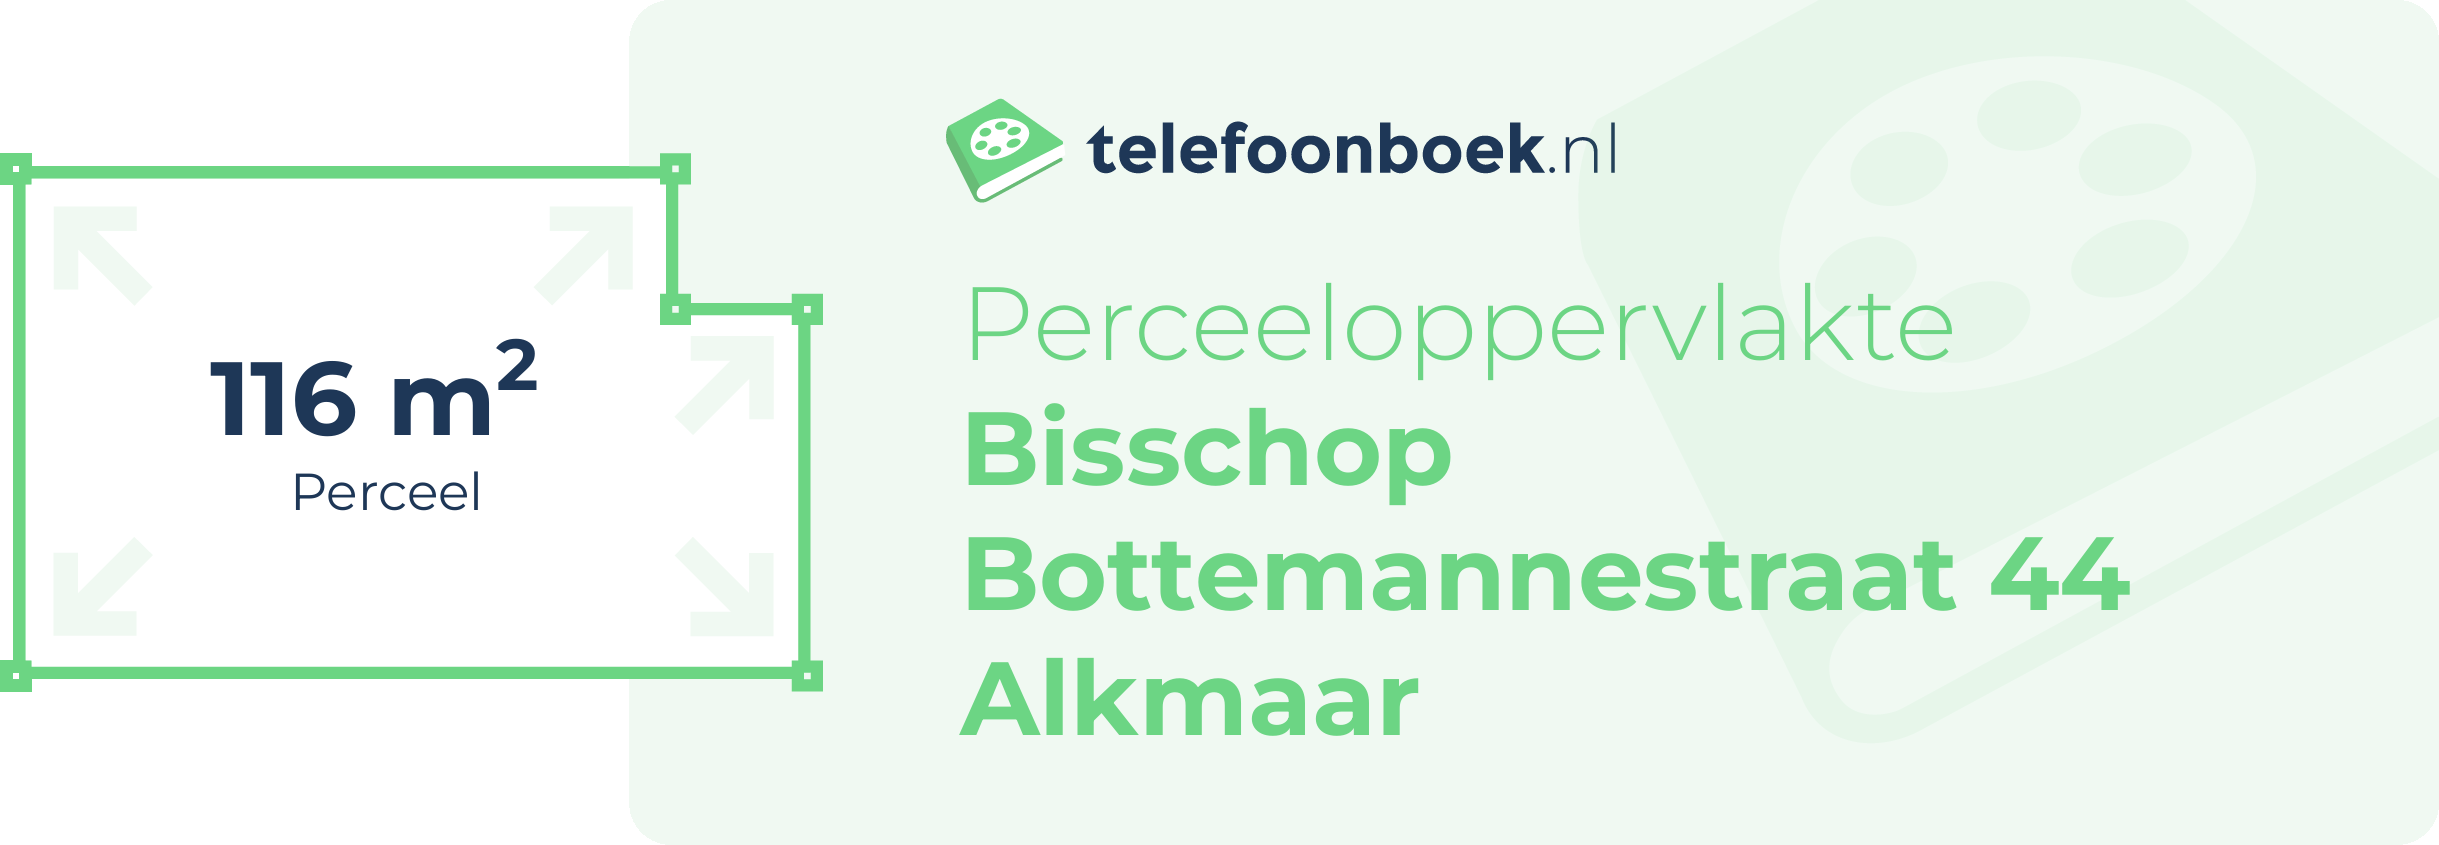 Perceeloppervlakte Bisschop Bottemannestraat 44 Alkmaar